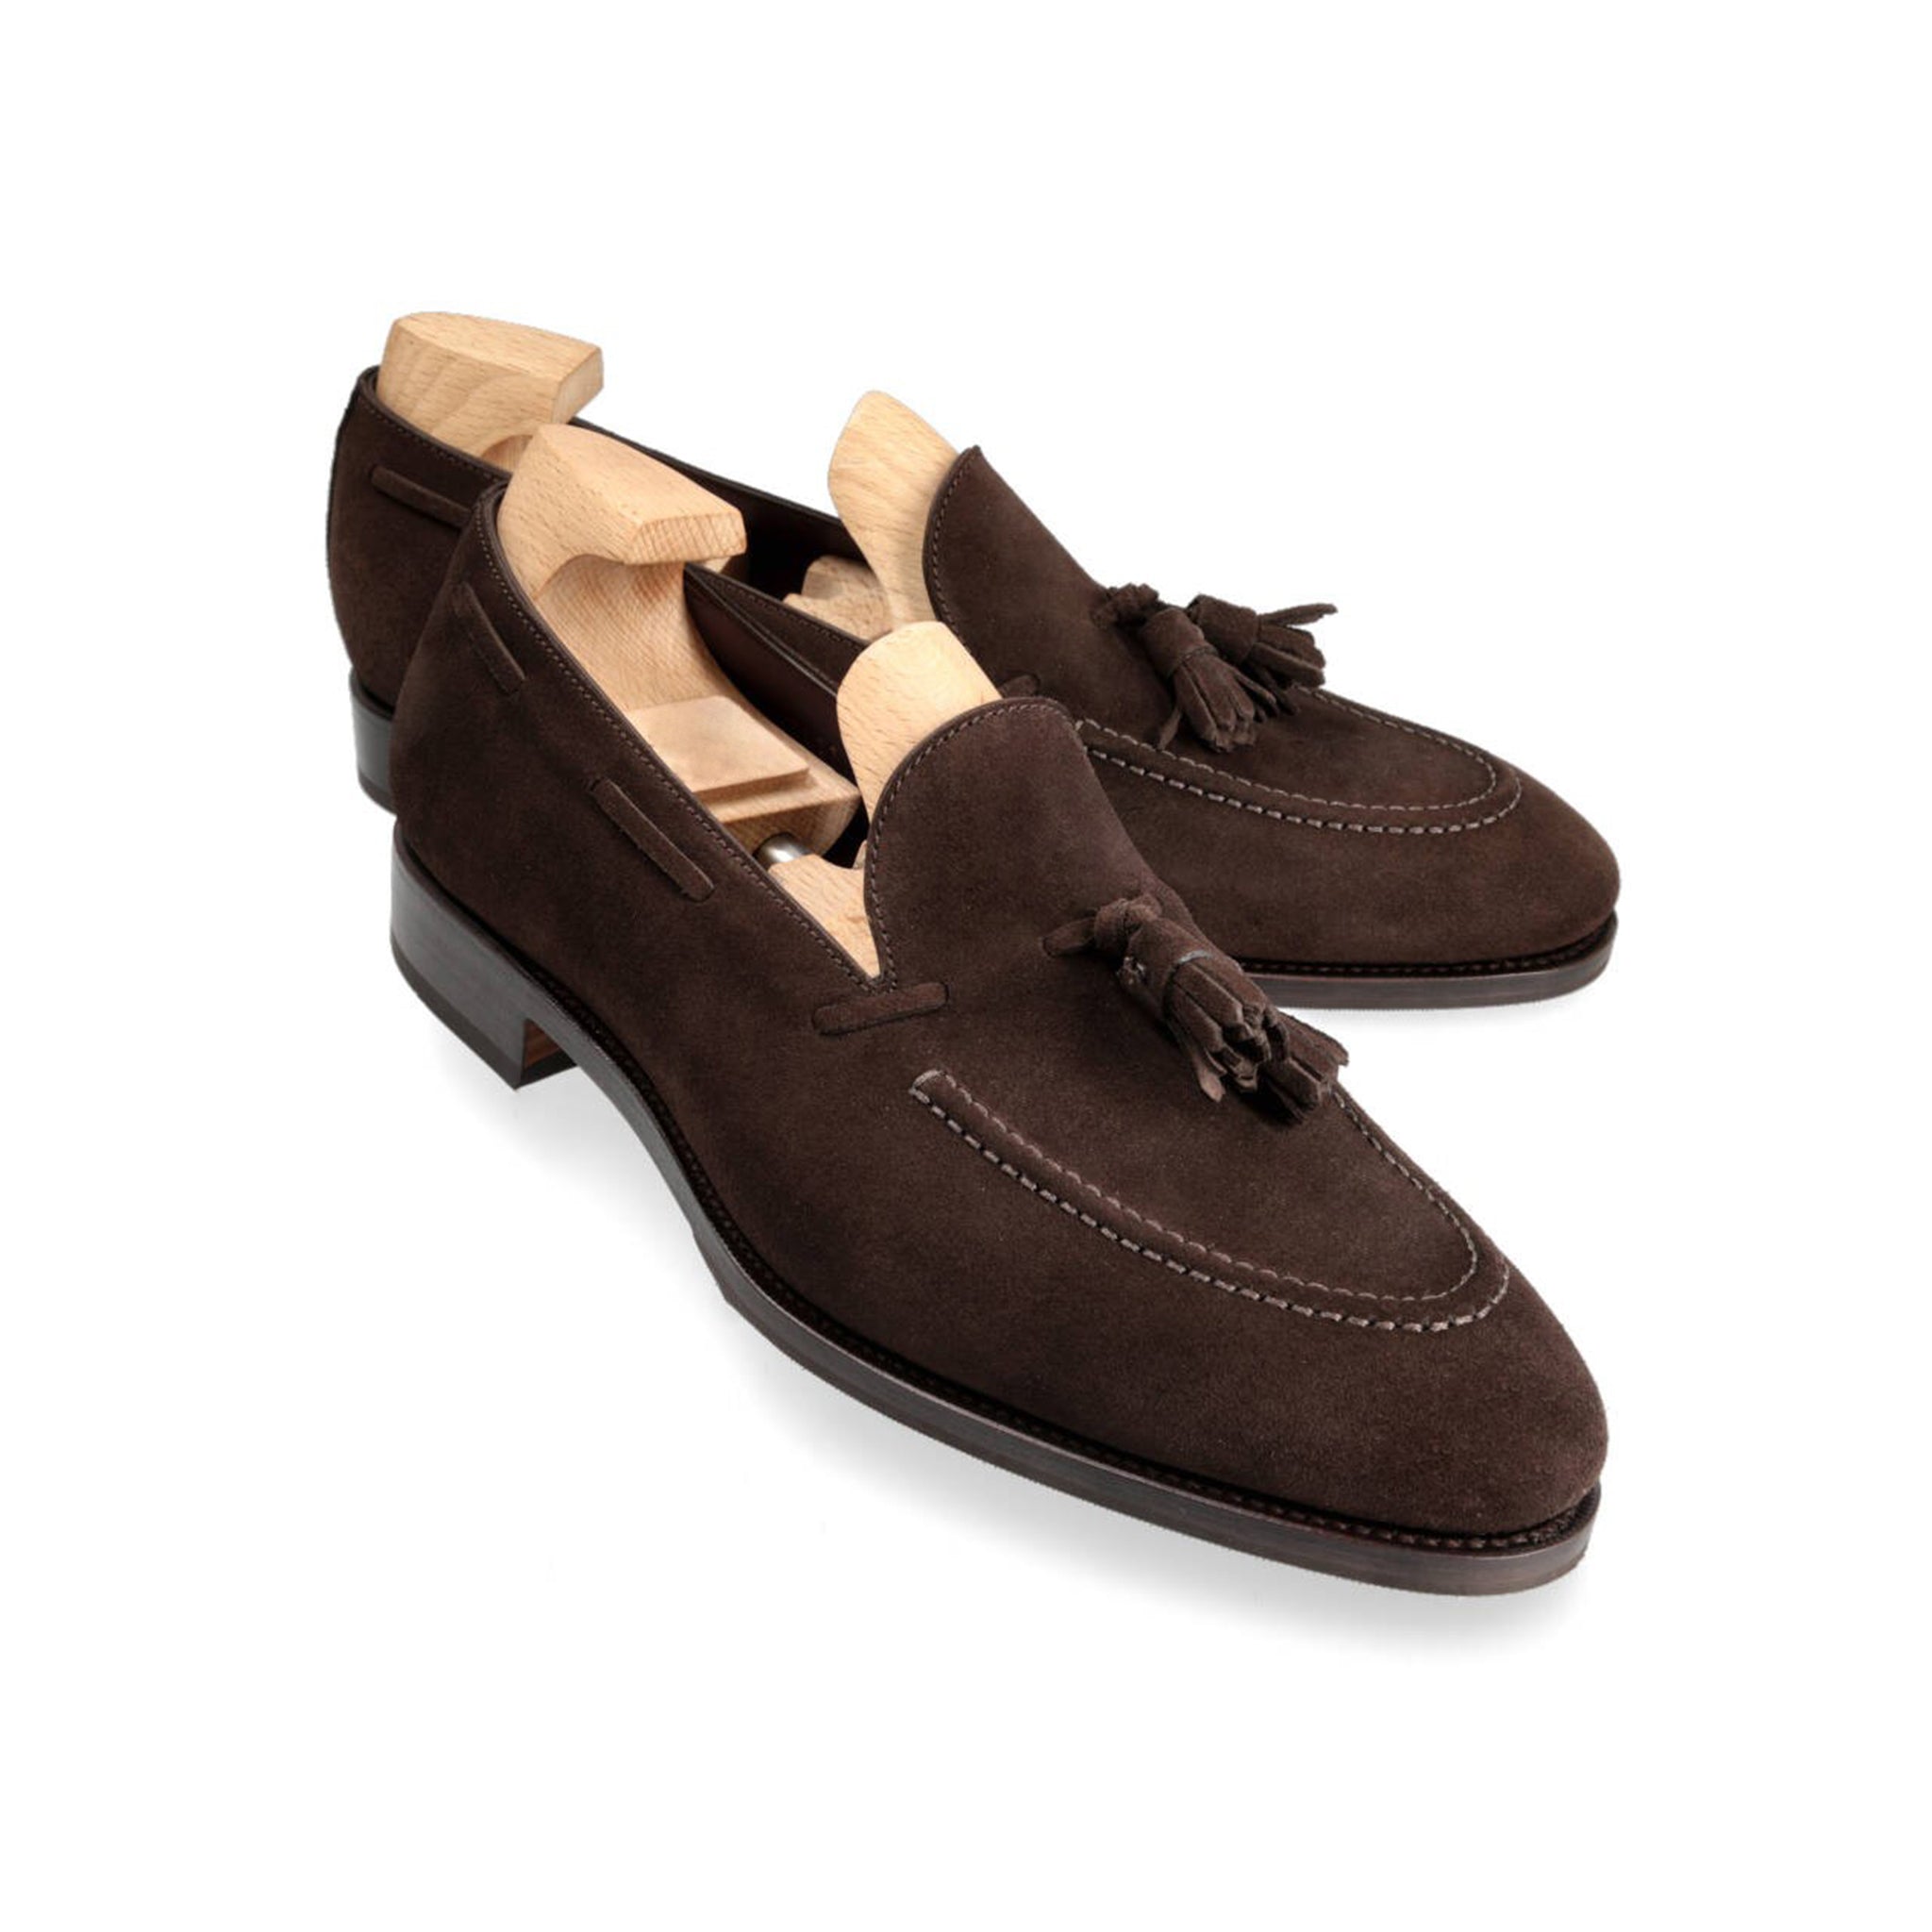 Cocoa Classic Design Tassel Loafers